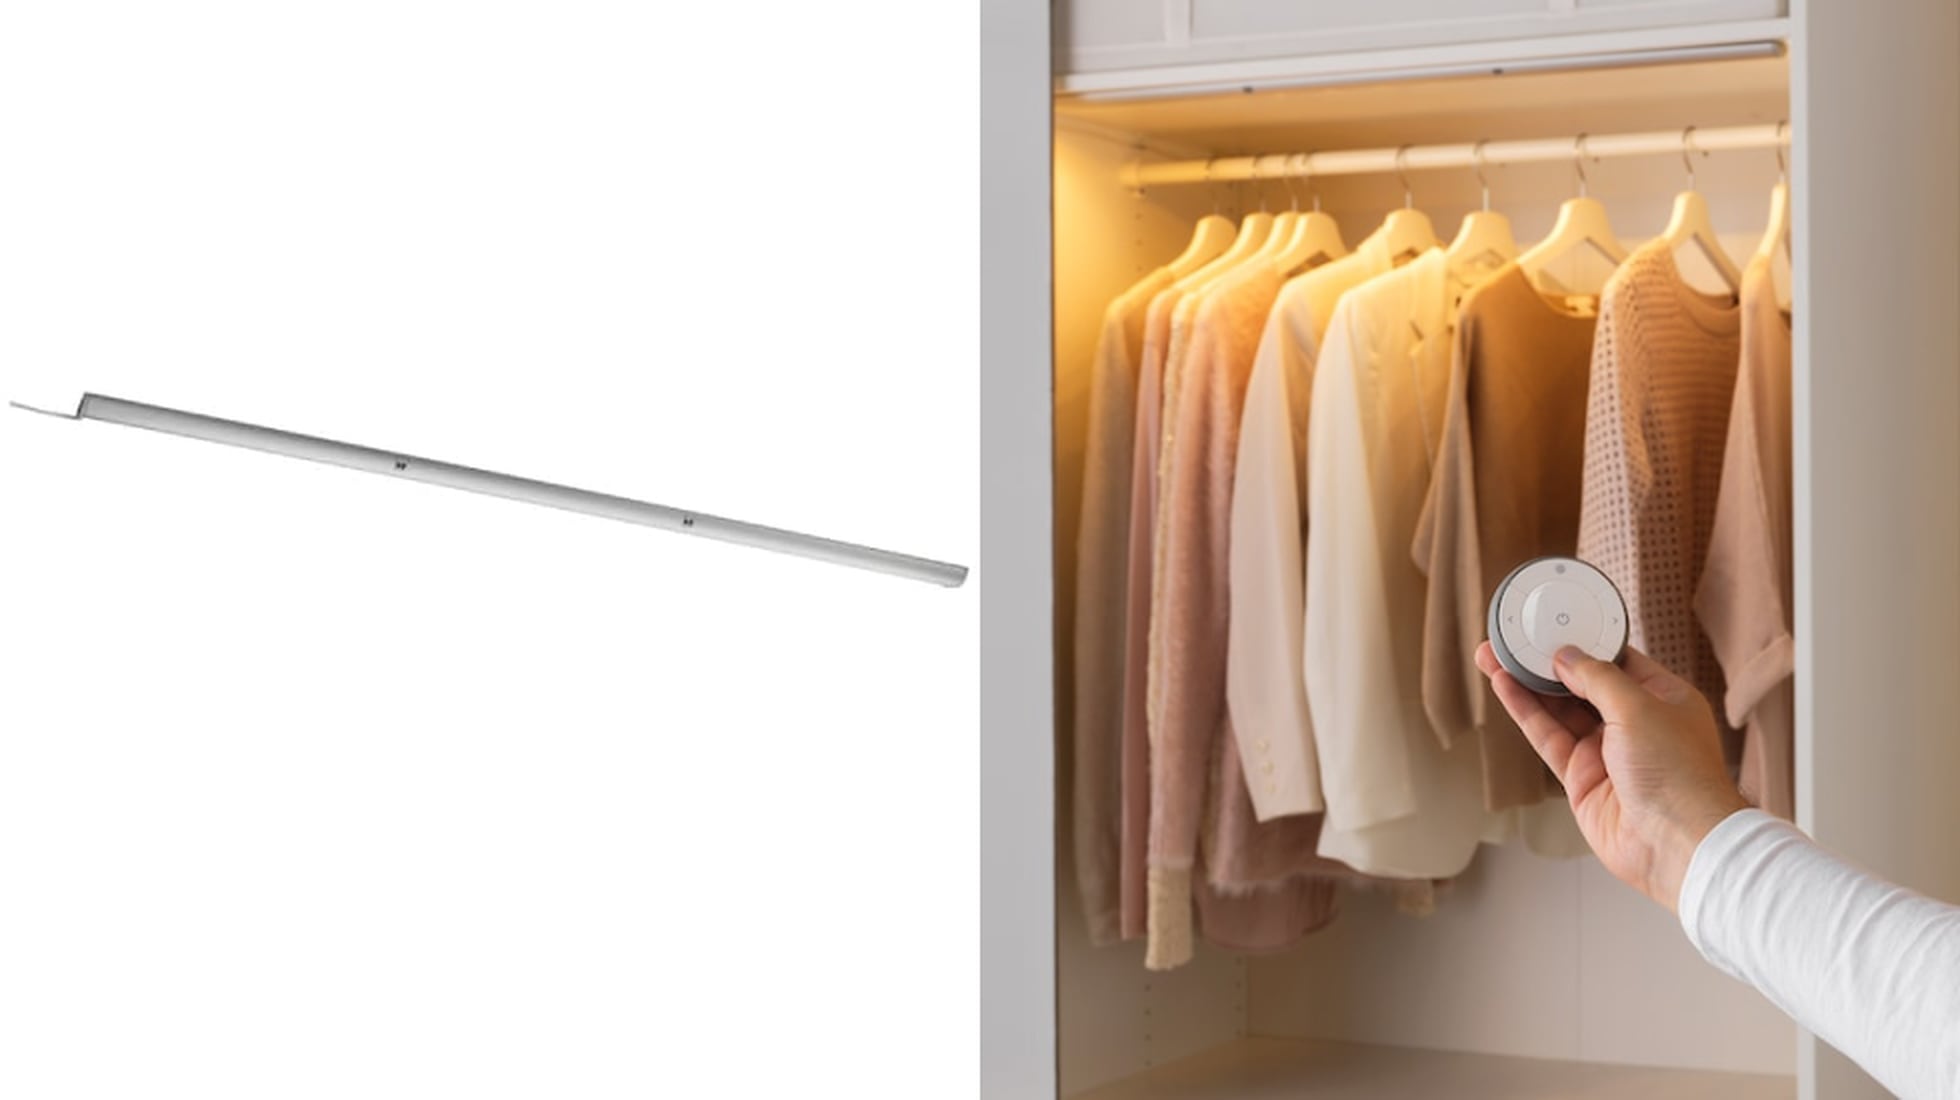 Consejos y trucos para iluminar el interior de armarios con luces LED -  Compratuled